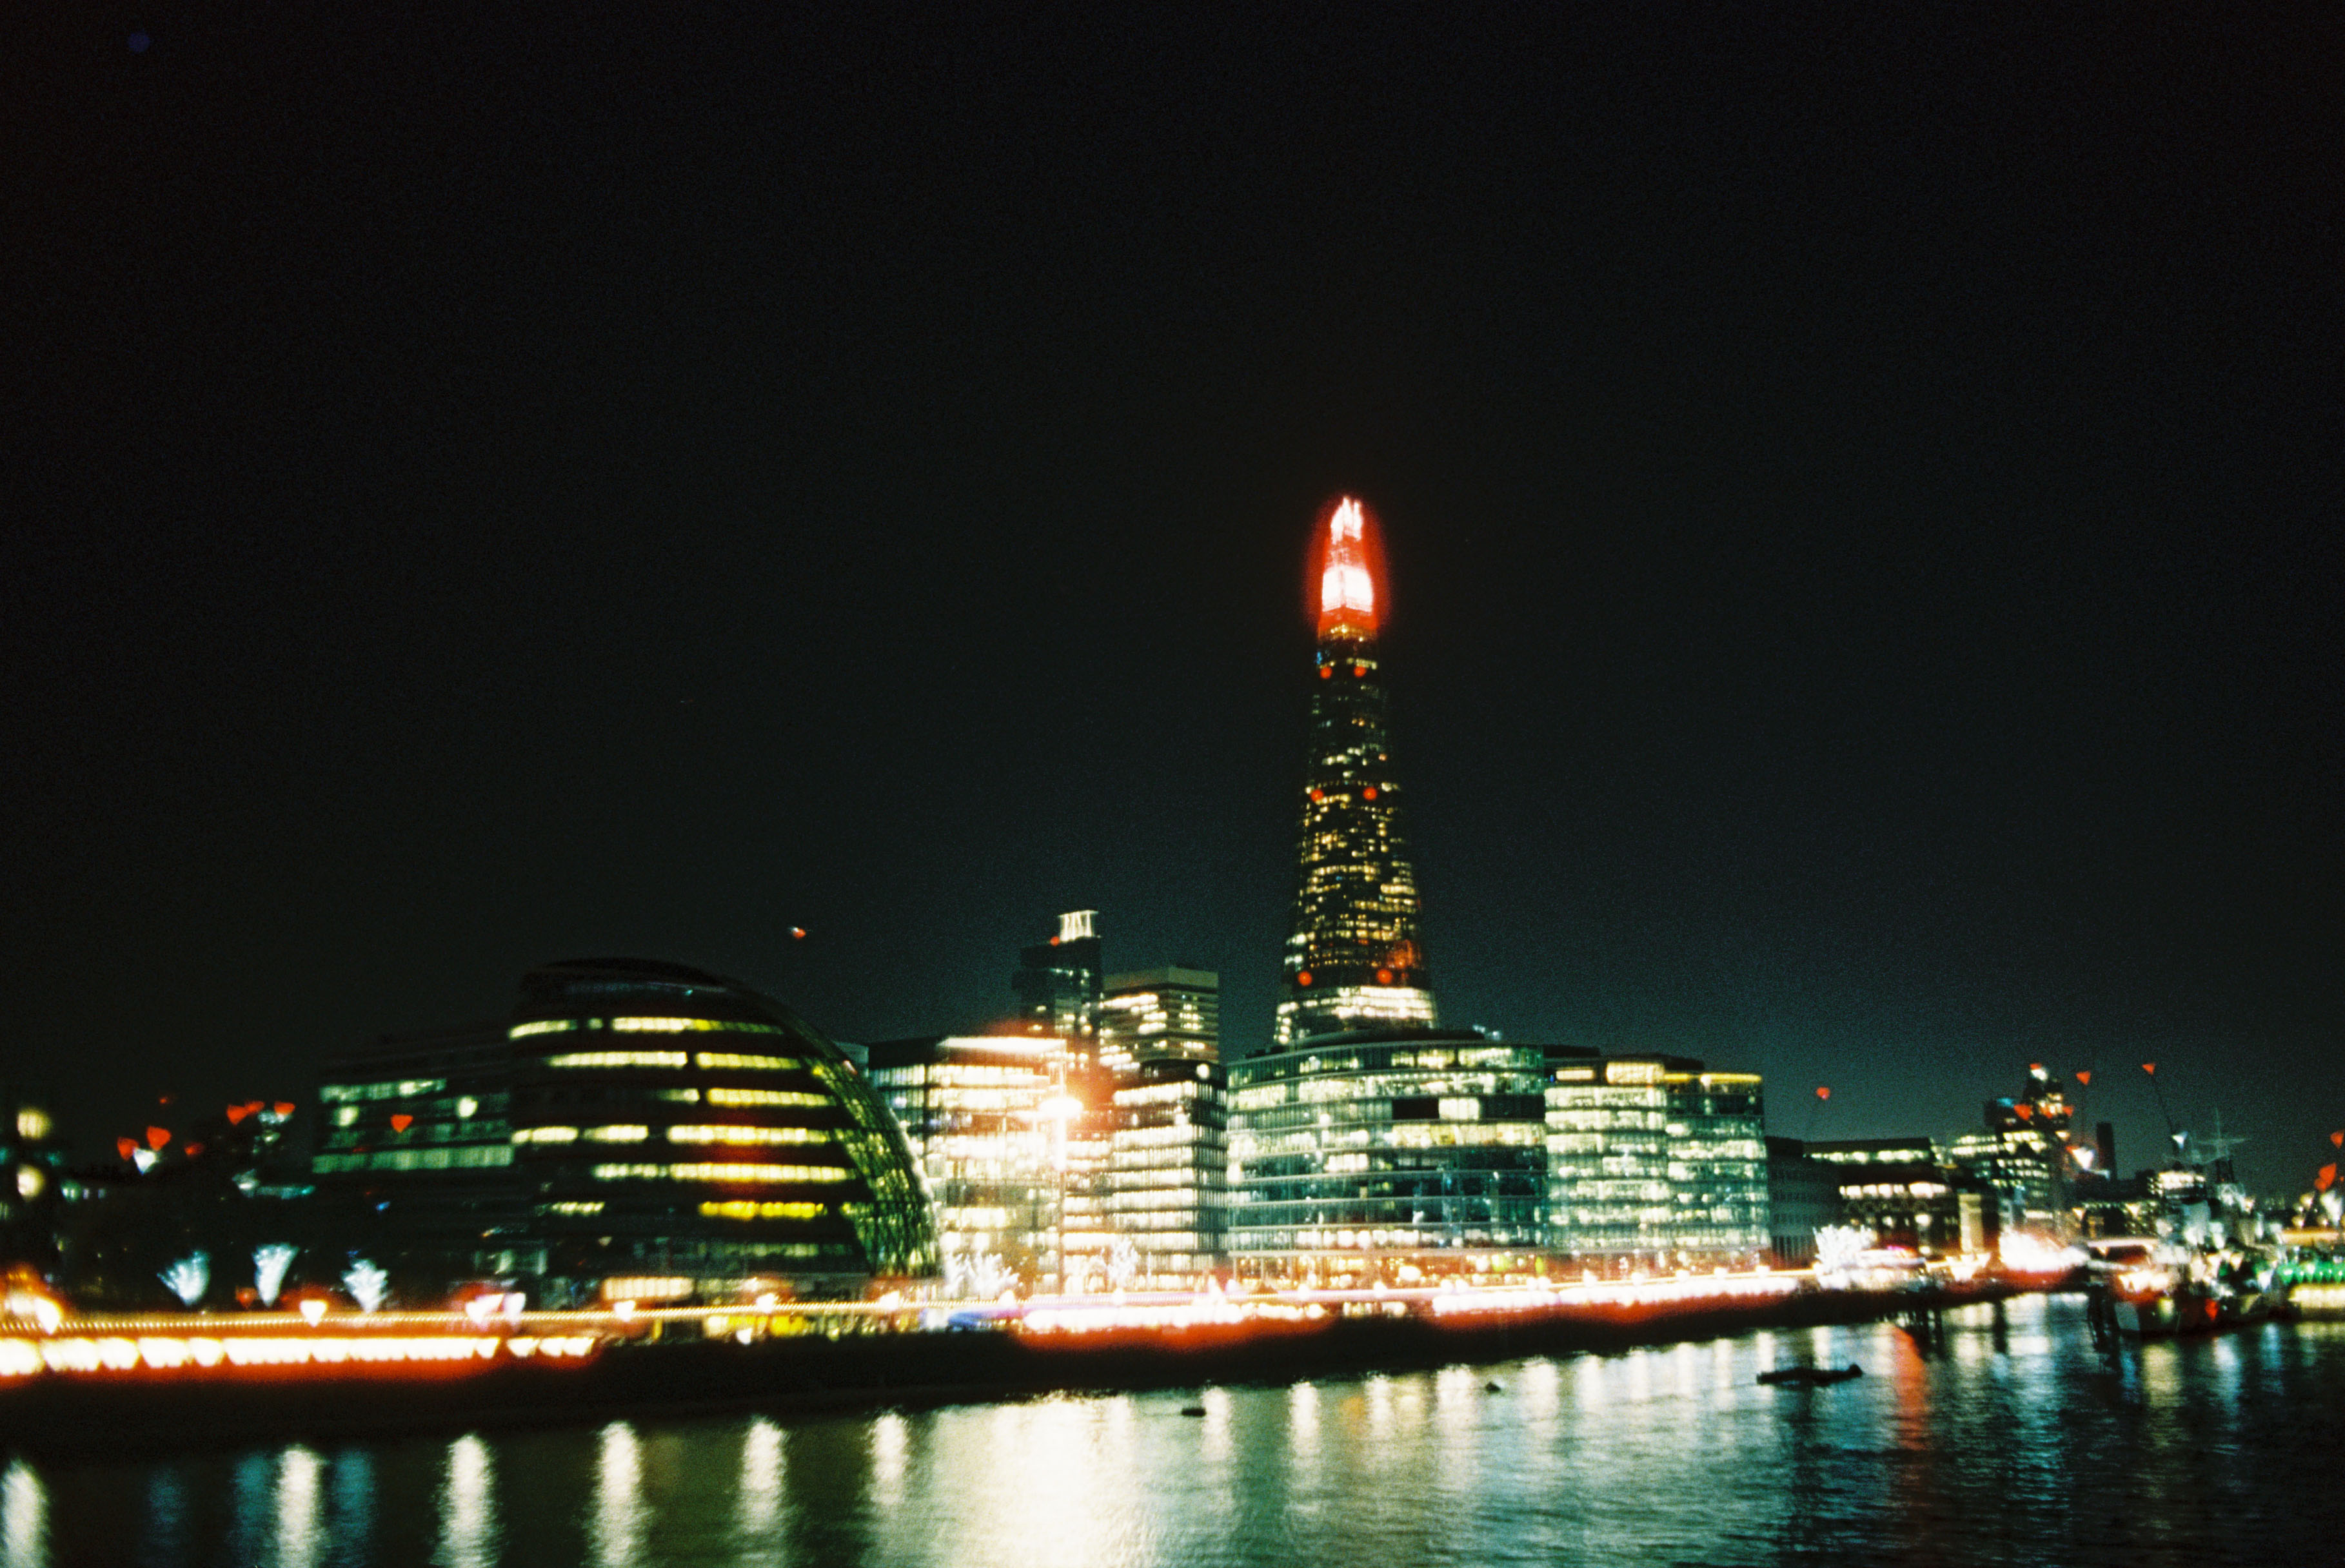 A Shard. Renzo Piano tervei alapján épült. Magassága 309,7 méter, ezzel Európa negyedik legmagasabb épülete, valamint az Egyesült Királyság második legmagasabb szabadon álló építménye. Mellesleg Londonban bárhol látható.